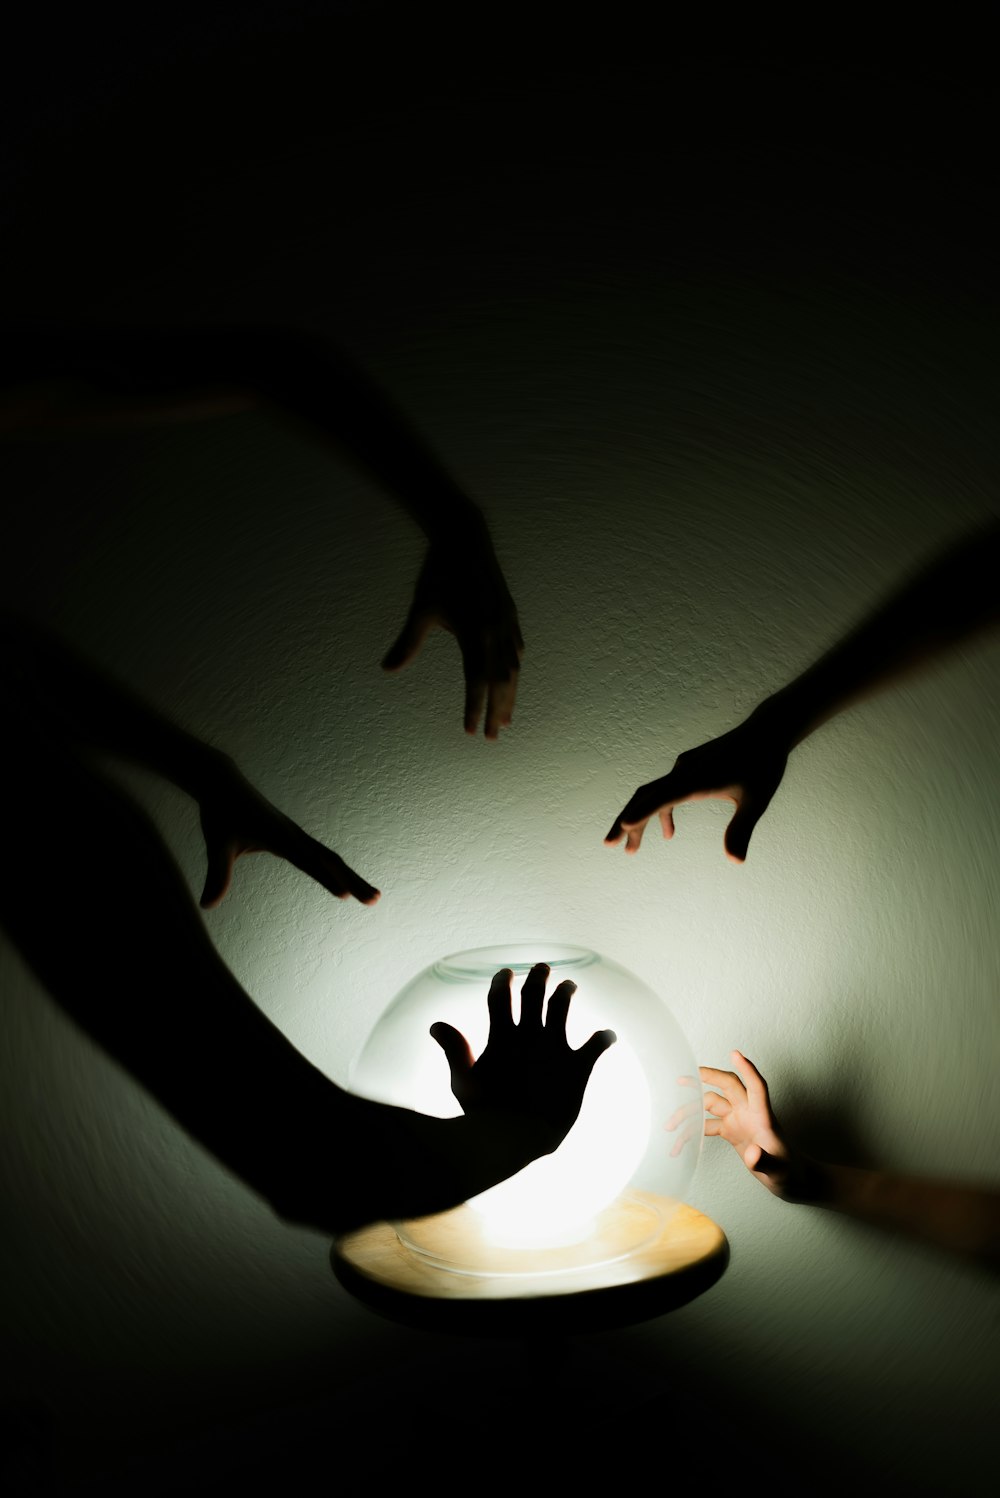 Eine Gruppe von Menschen, die nach einem Licht im Dunkeln greifen